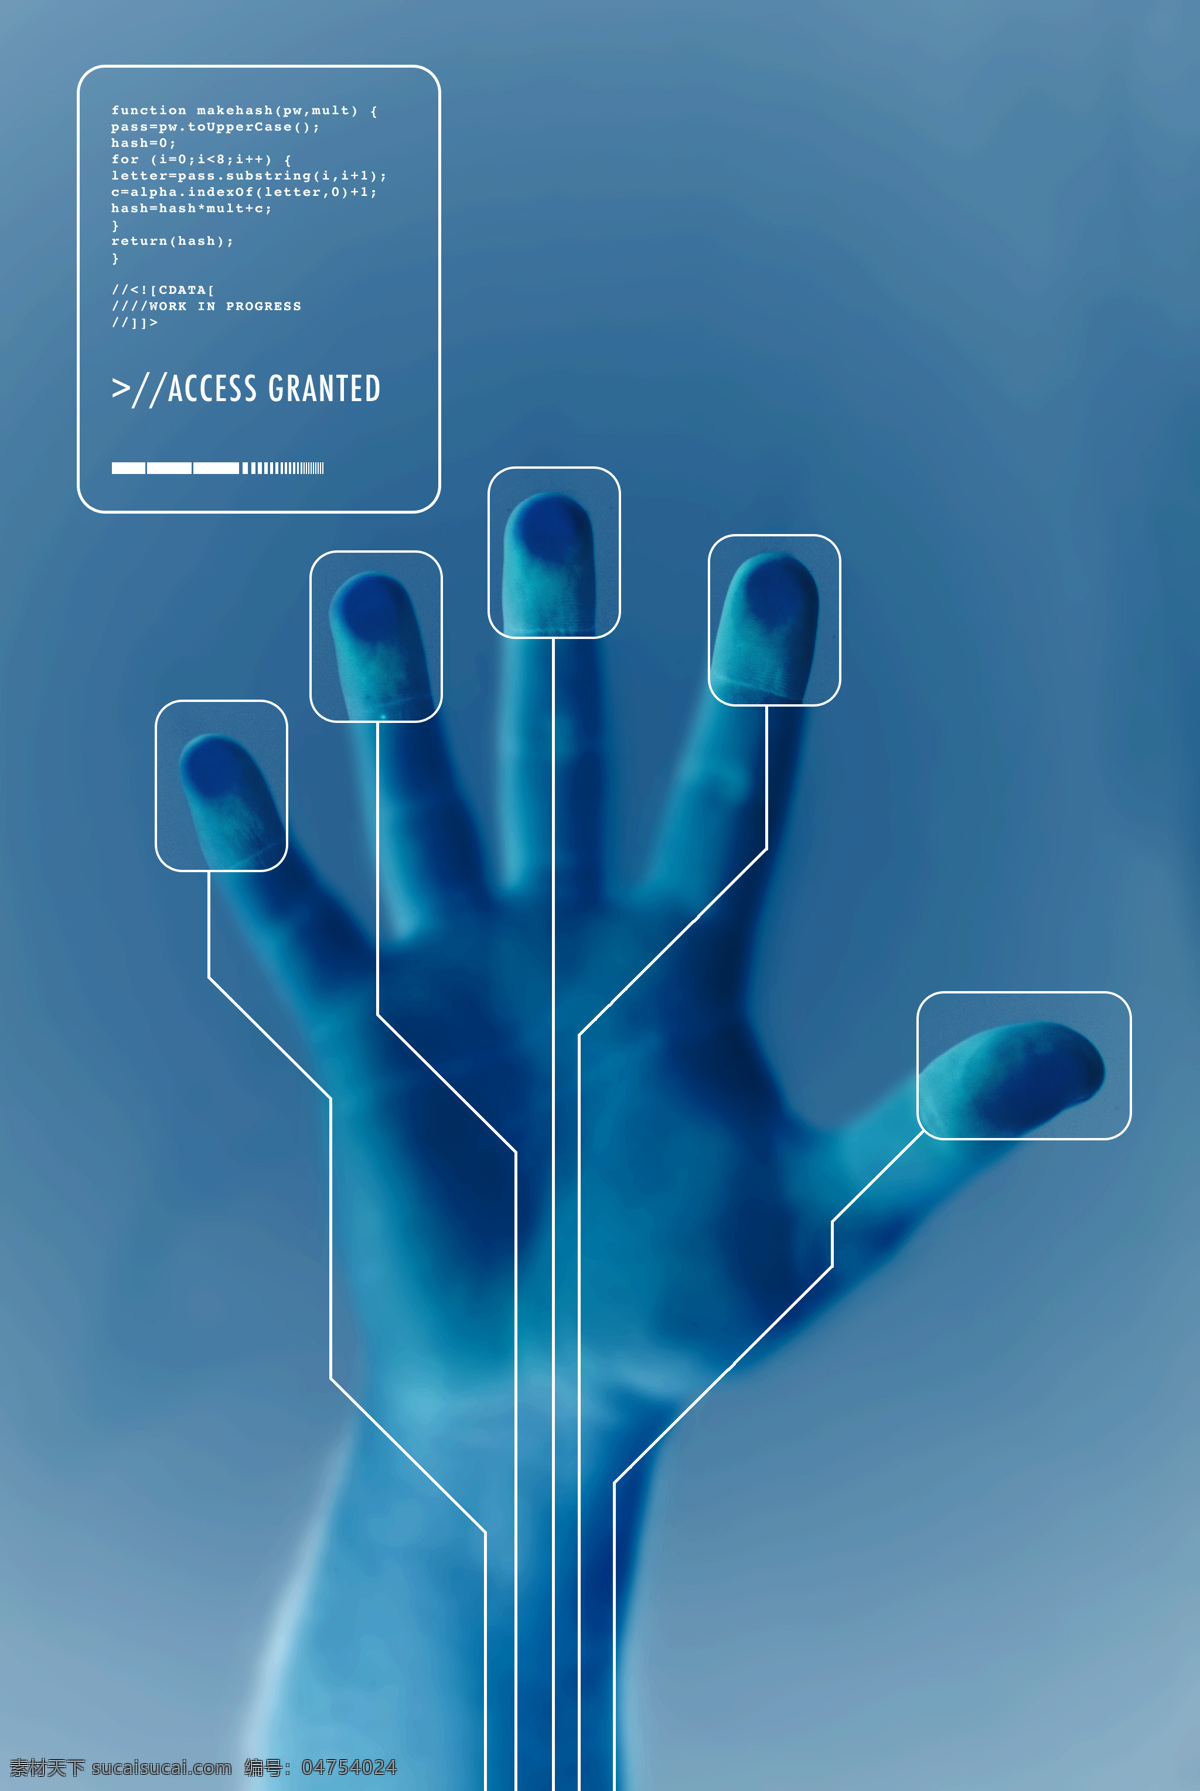 指纹识别系统 手纹指纹 掌纹识别 安全监测 安全系统 智能识别系统 手纹 指纹 手印 指纹鉴别 指纹识别 读取 扫描 高端 科技